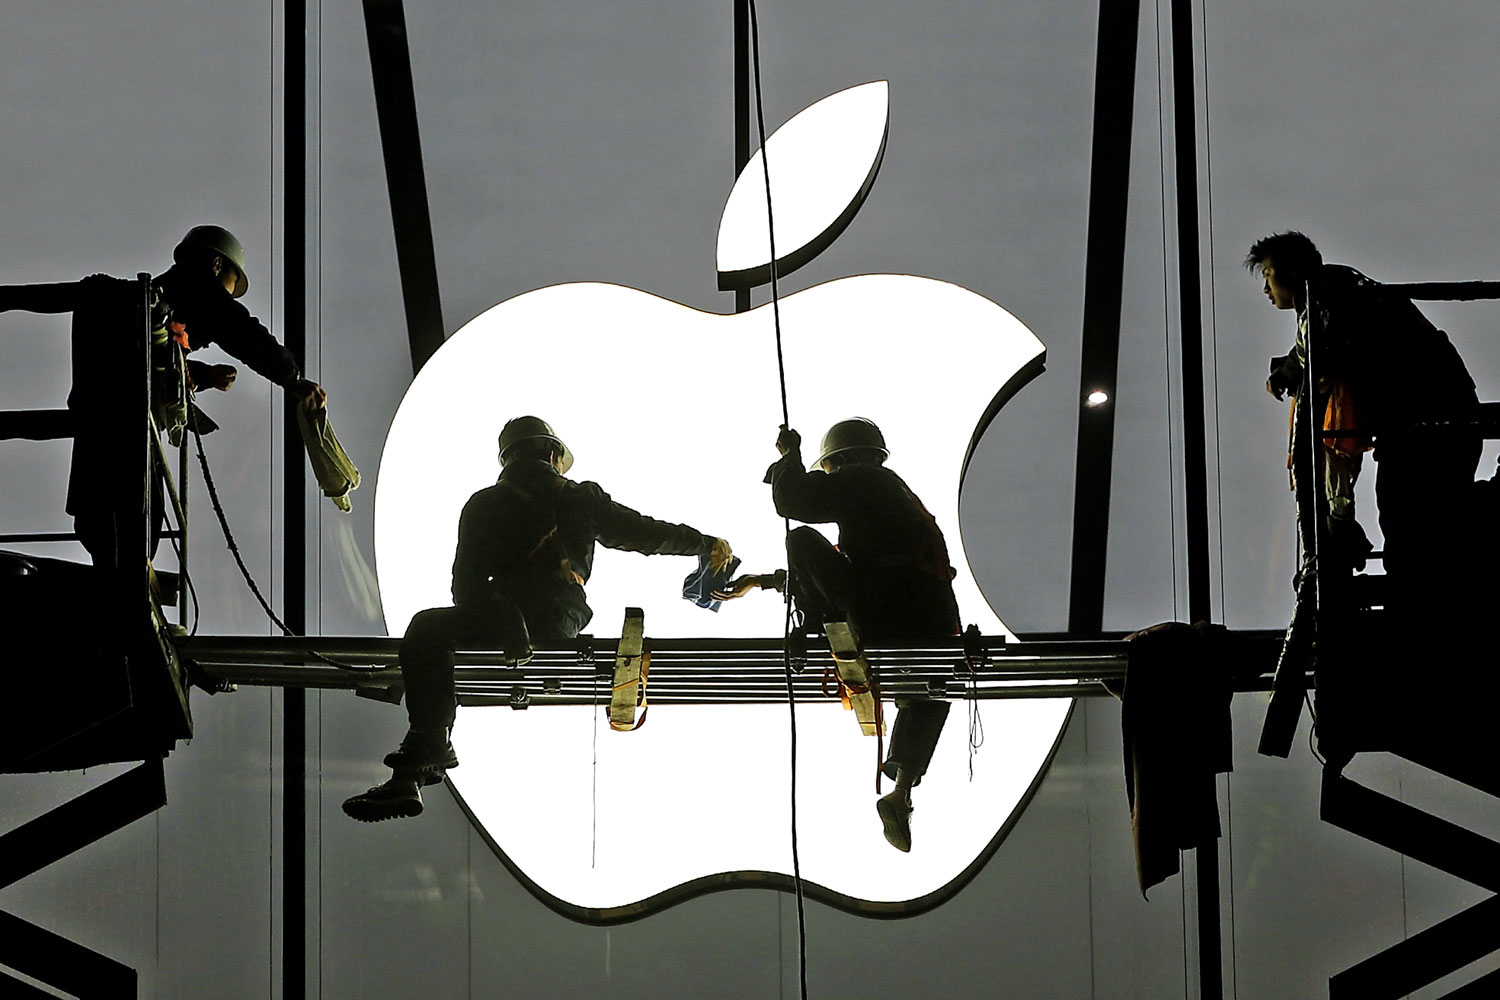 Kínai munkások szorgoskodnak a hangcsoui Apple Store építésén. A jelenleg meglévő, tizenöt szaküzletből álló hálózatukat az amerikaiak másfél éven belül negyven egységre fogják bővíteni egyik legfontosabb célpiacukon